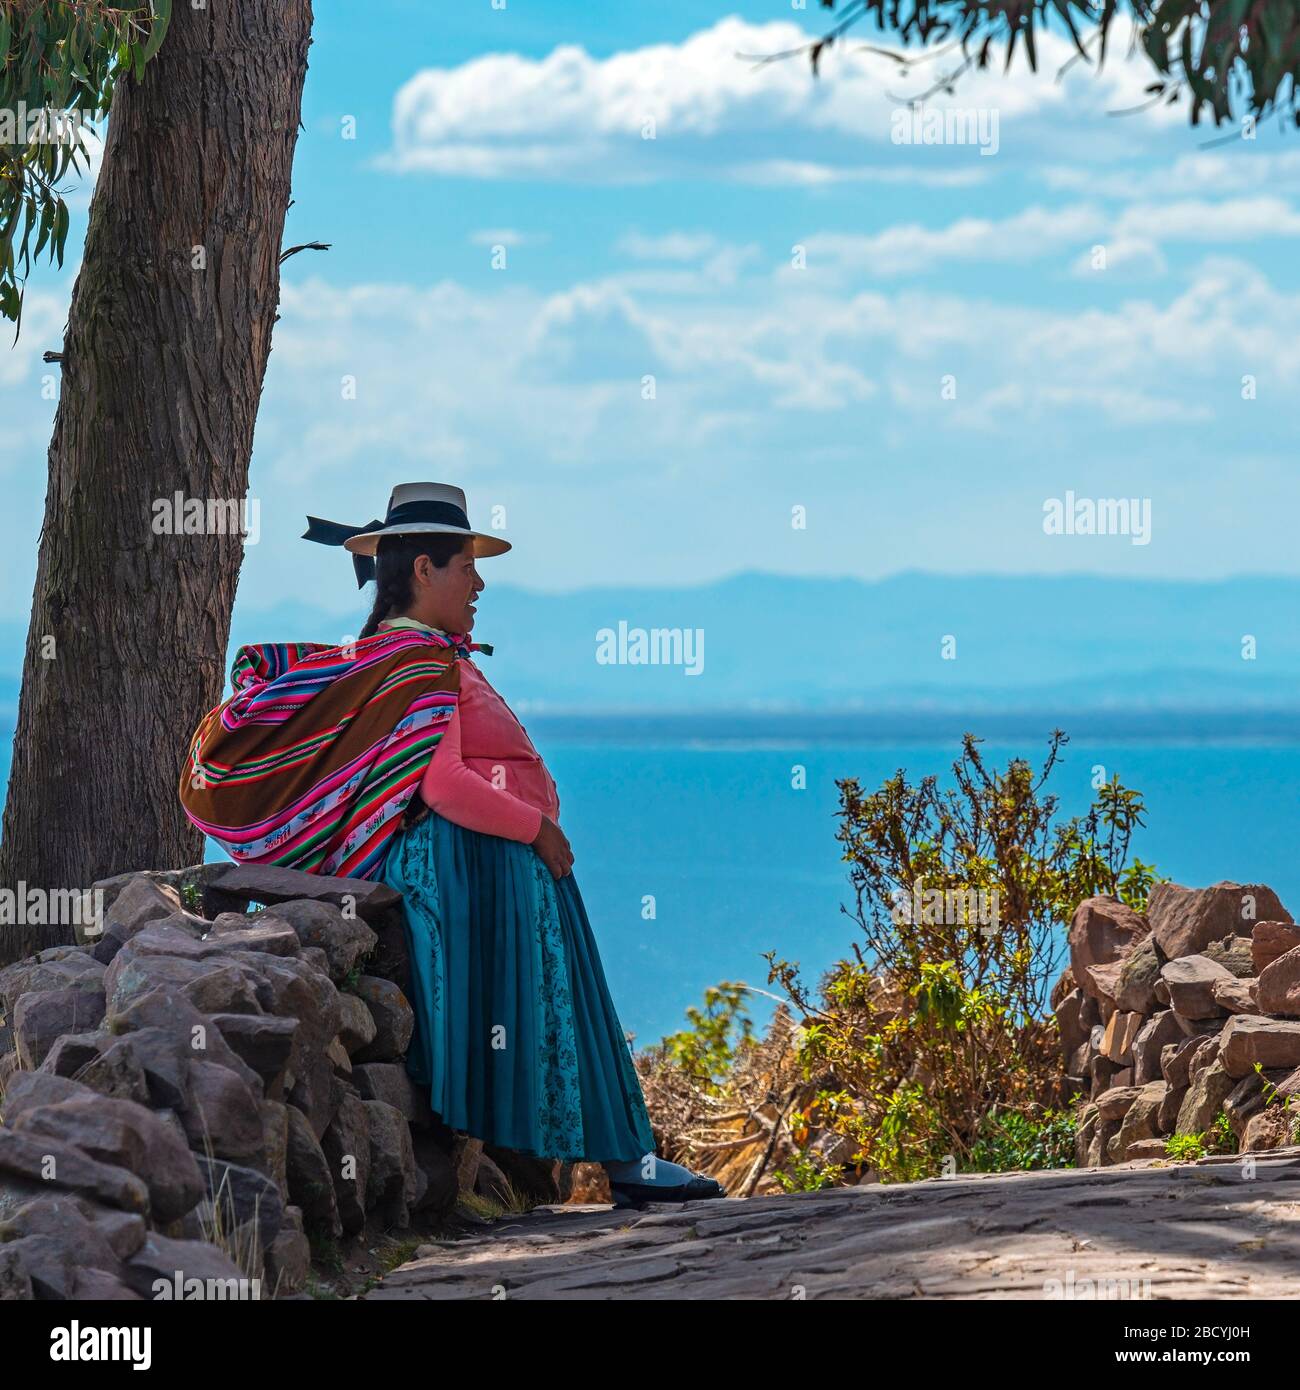 Femme indigène péruvienne quechua dans les vêtements traditionnels avec le lac Titicaca en arrière-plan, Isla Taquile, Pérou. Banque D'Images